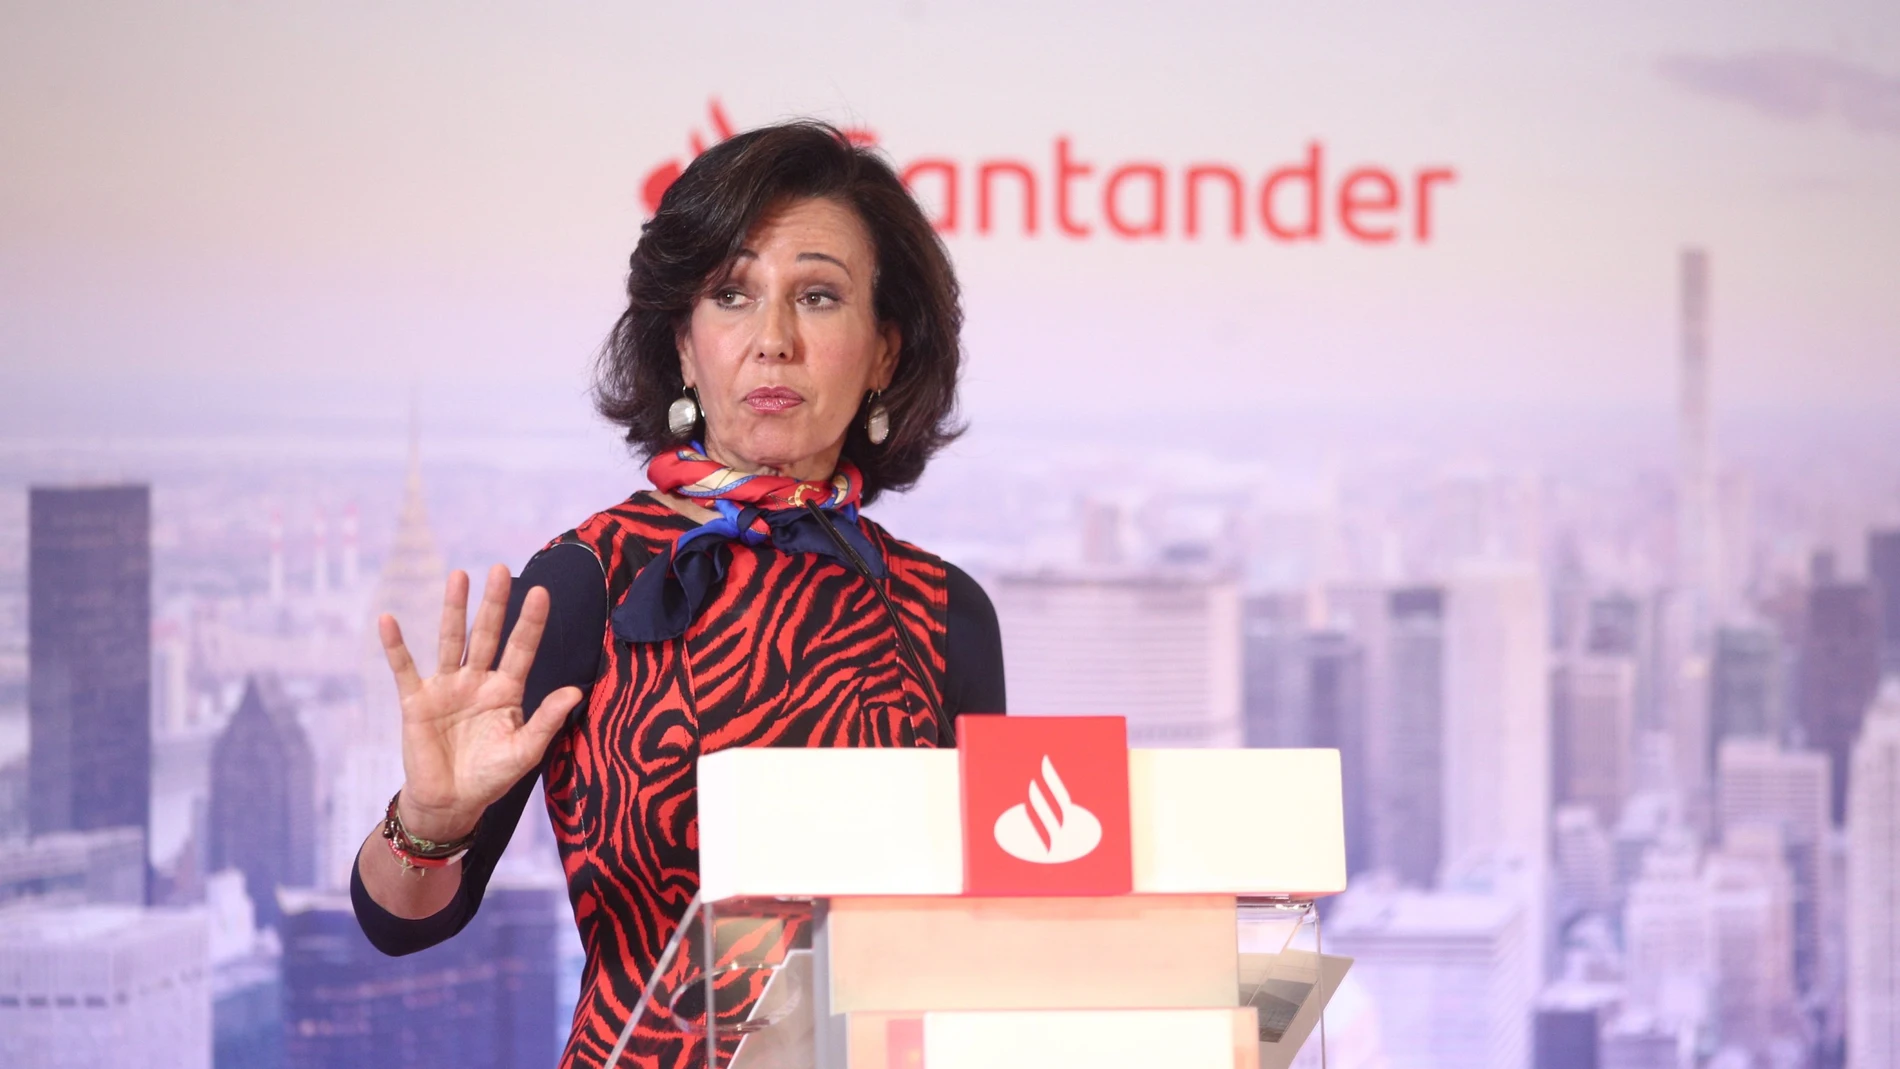 La presidenta del Bancon Santander, Ana Botín durante una presentación de resultados de la entidad